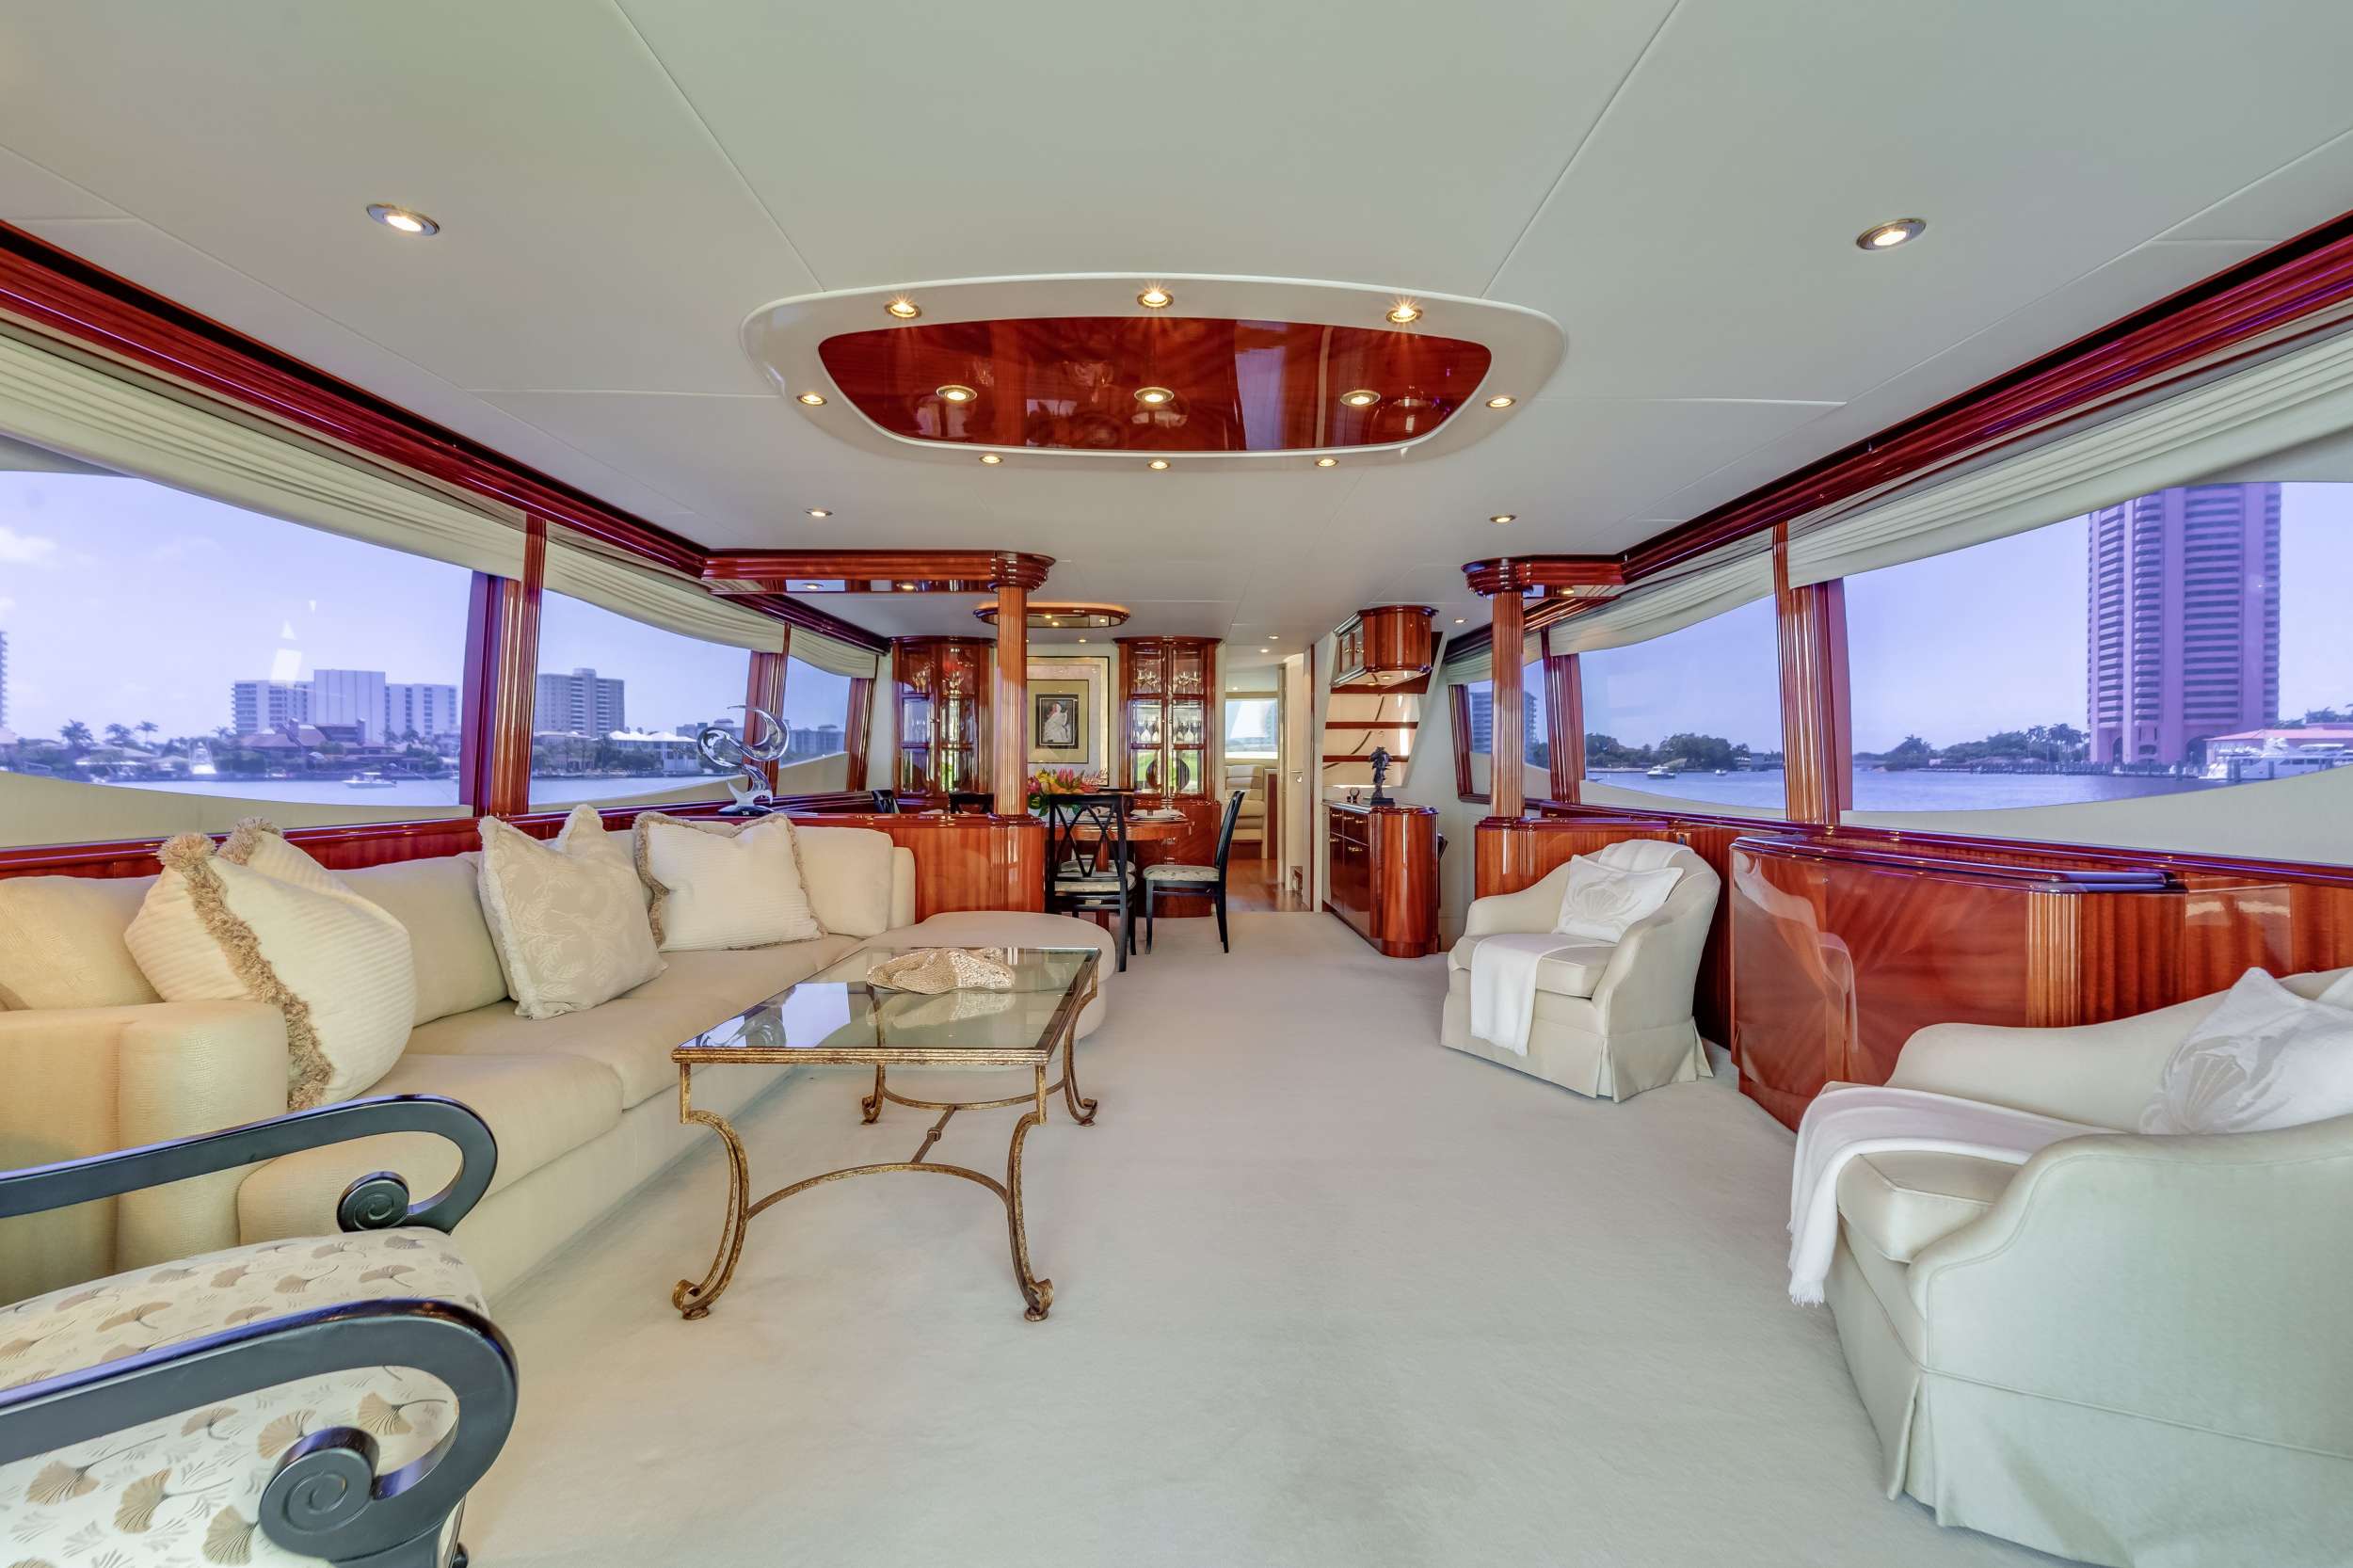 COPAY - Luxury yacht charter Bahamas & Boat hire in Florida & Bahamas 2